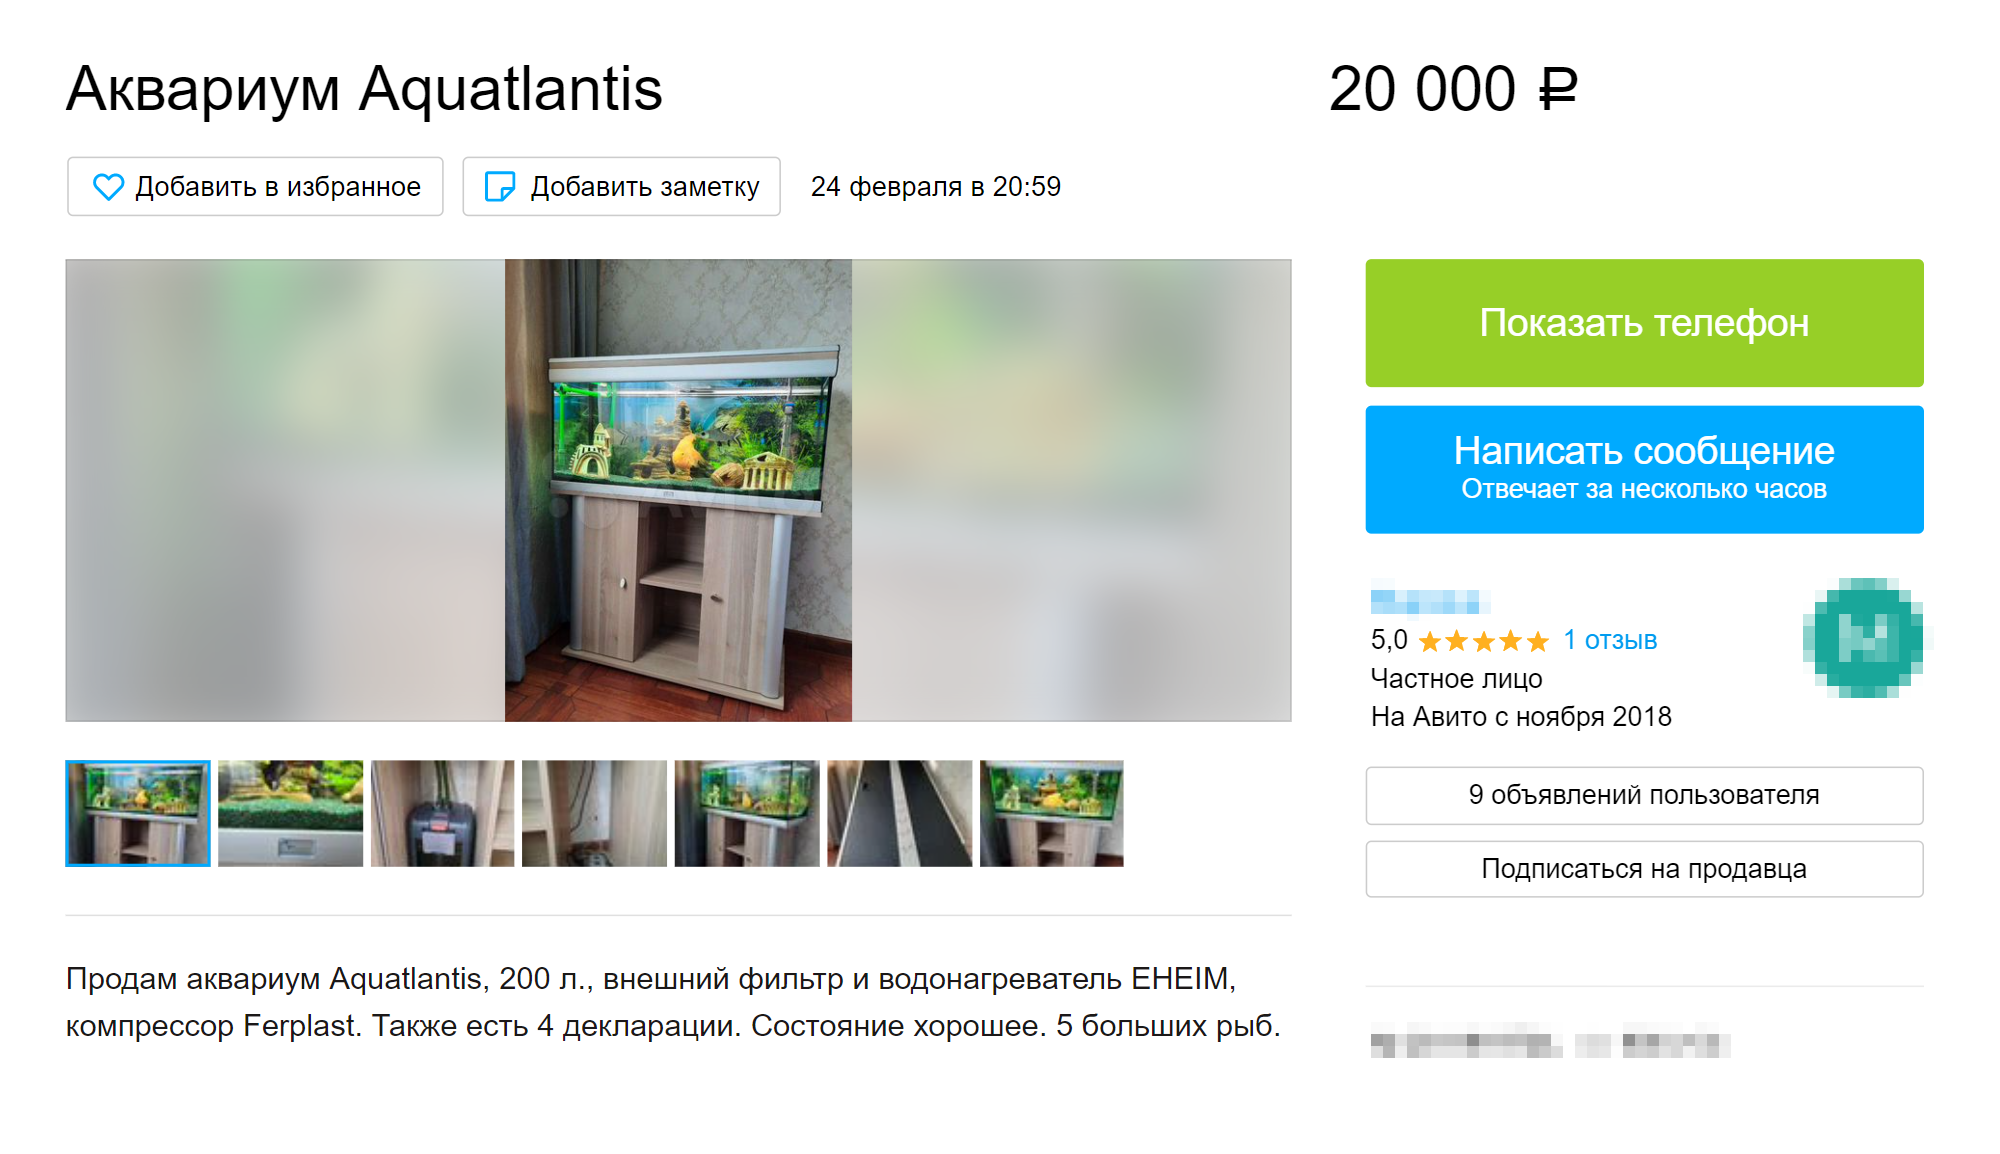 Аквариум с фильтром в этом объявлении стоит дешевле, чем каждый из них по отдельности. Источник: avito.ru